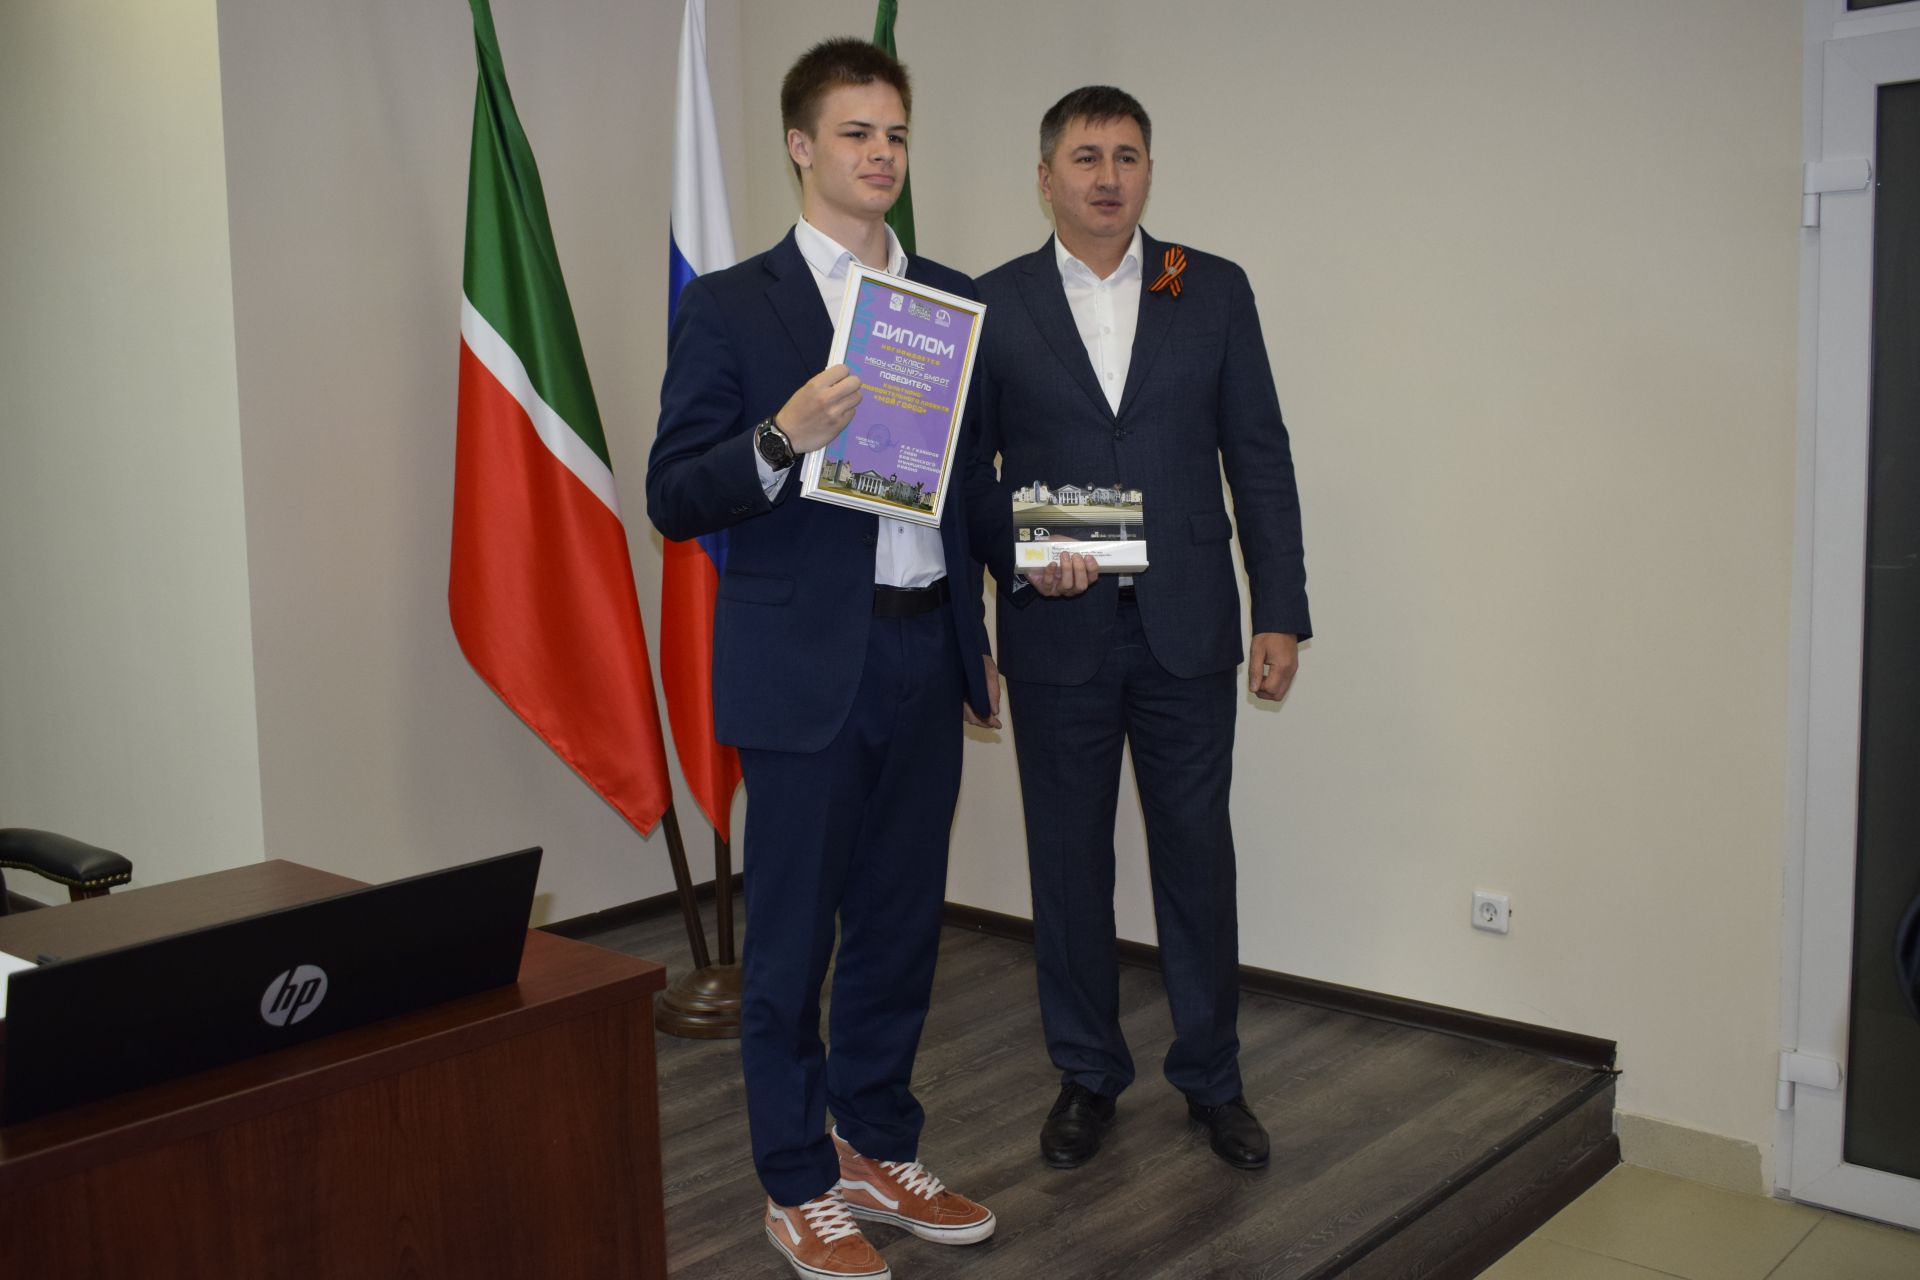 Победители краеведческого проекта получили заслуженные награды